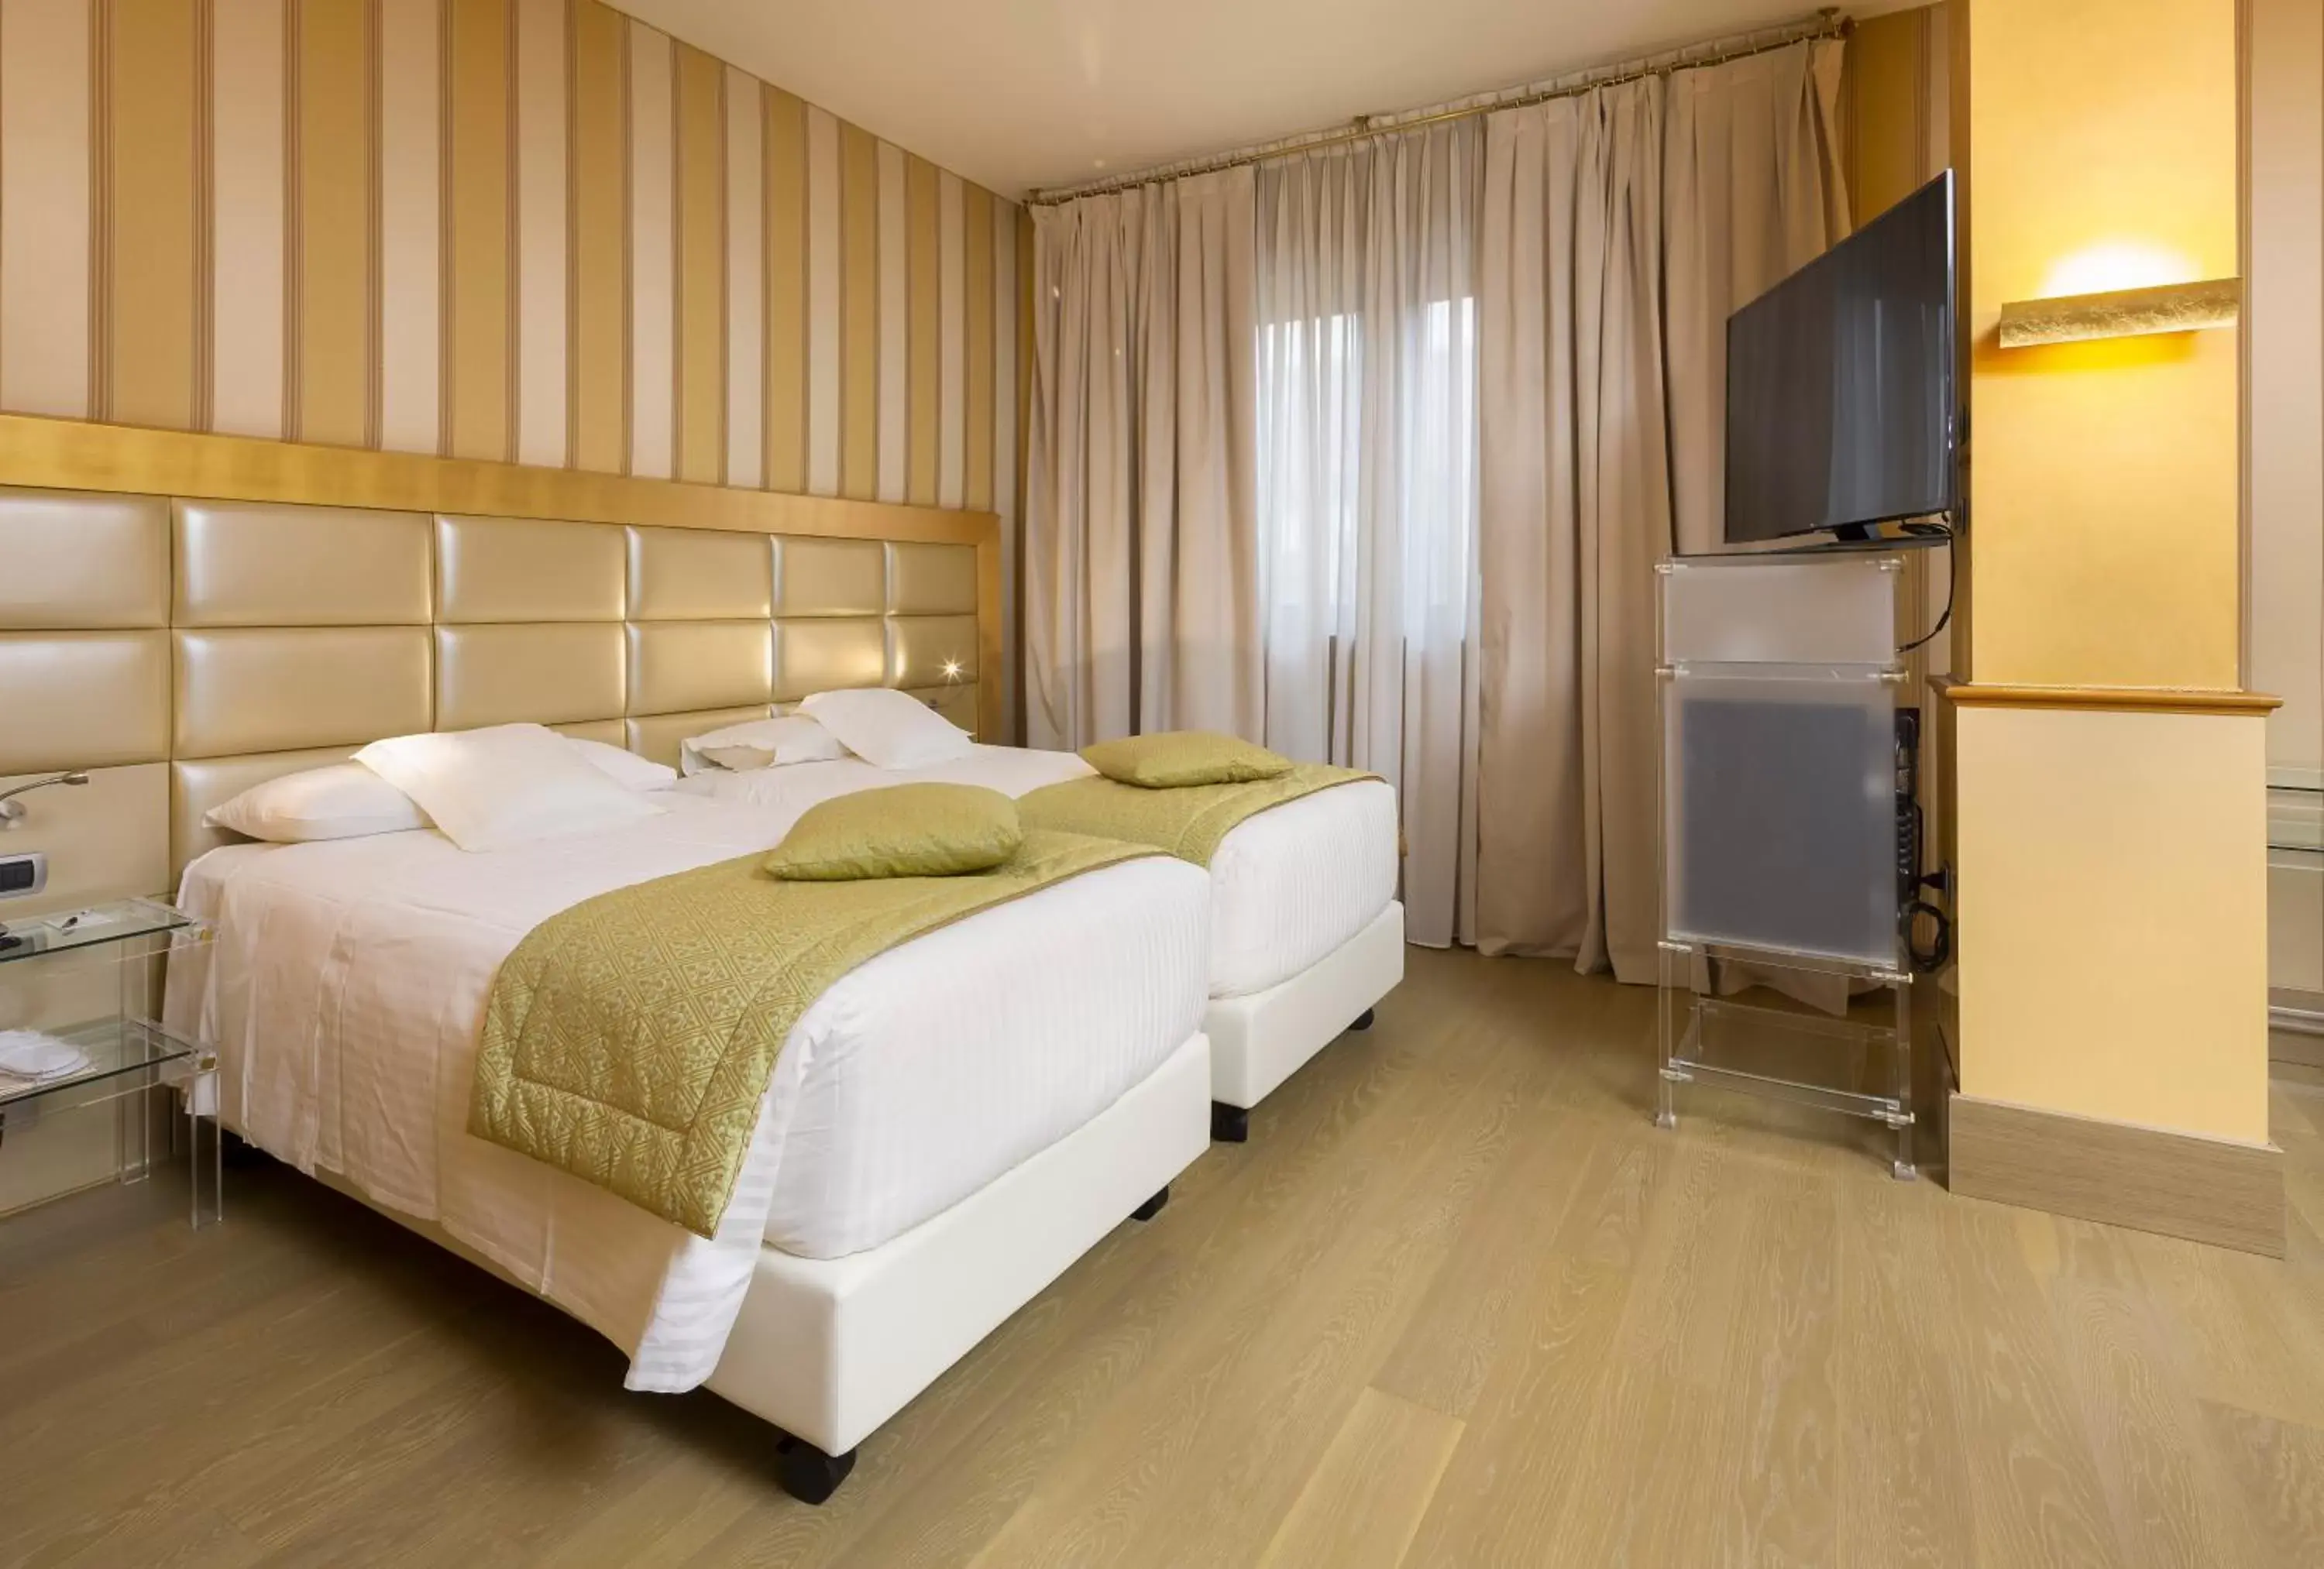 Bedroom in c-hotels Rubens